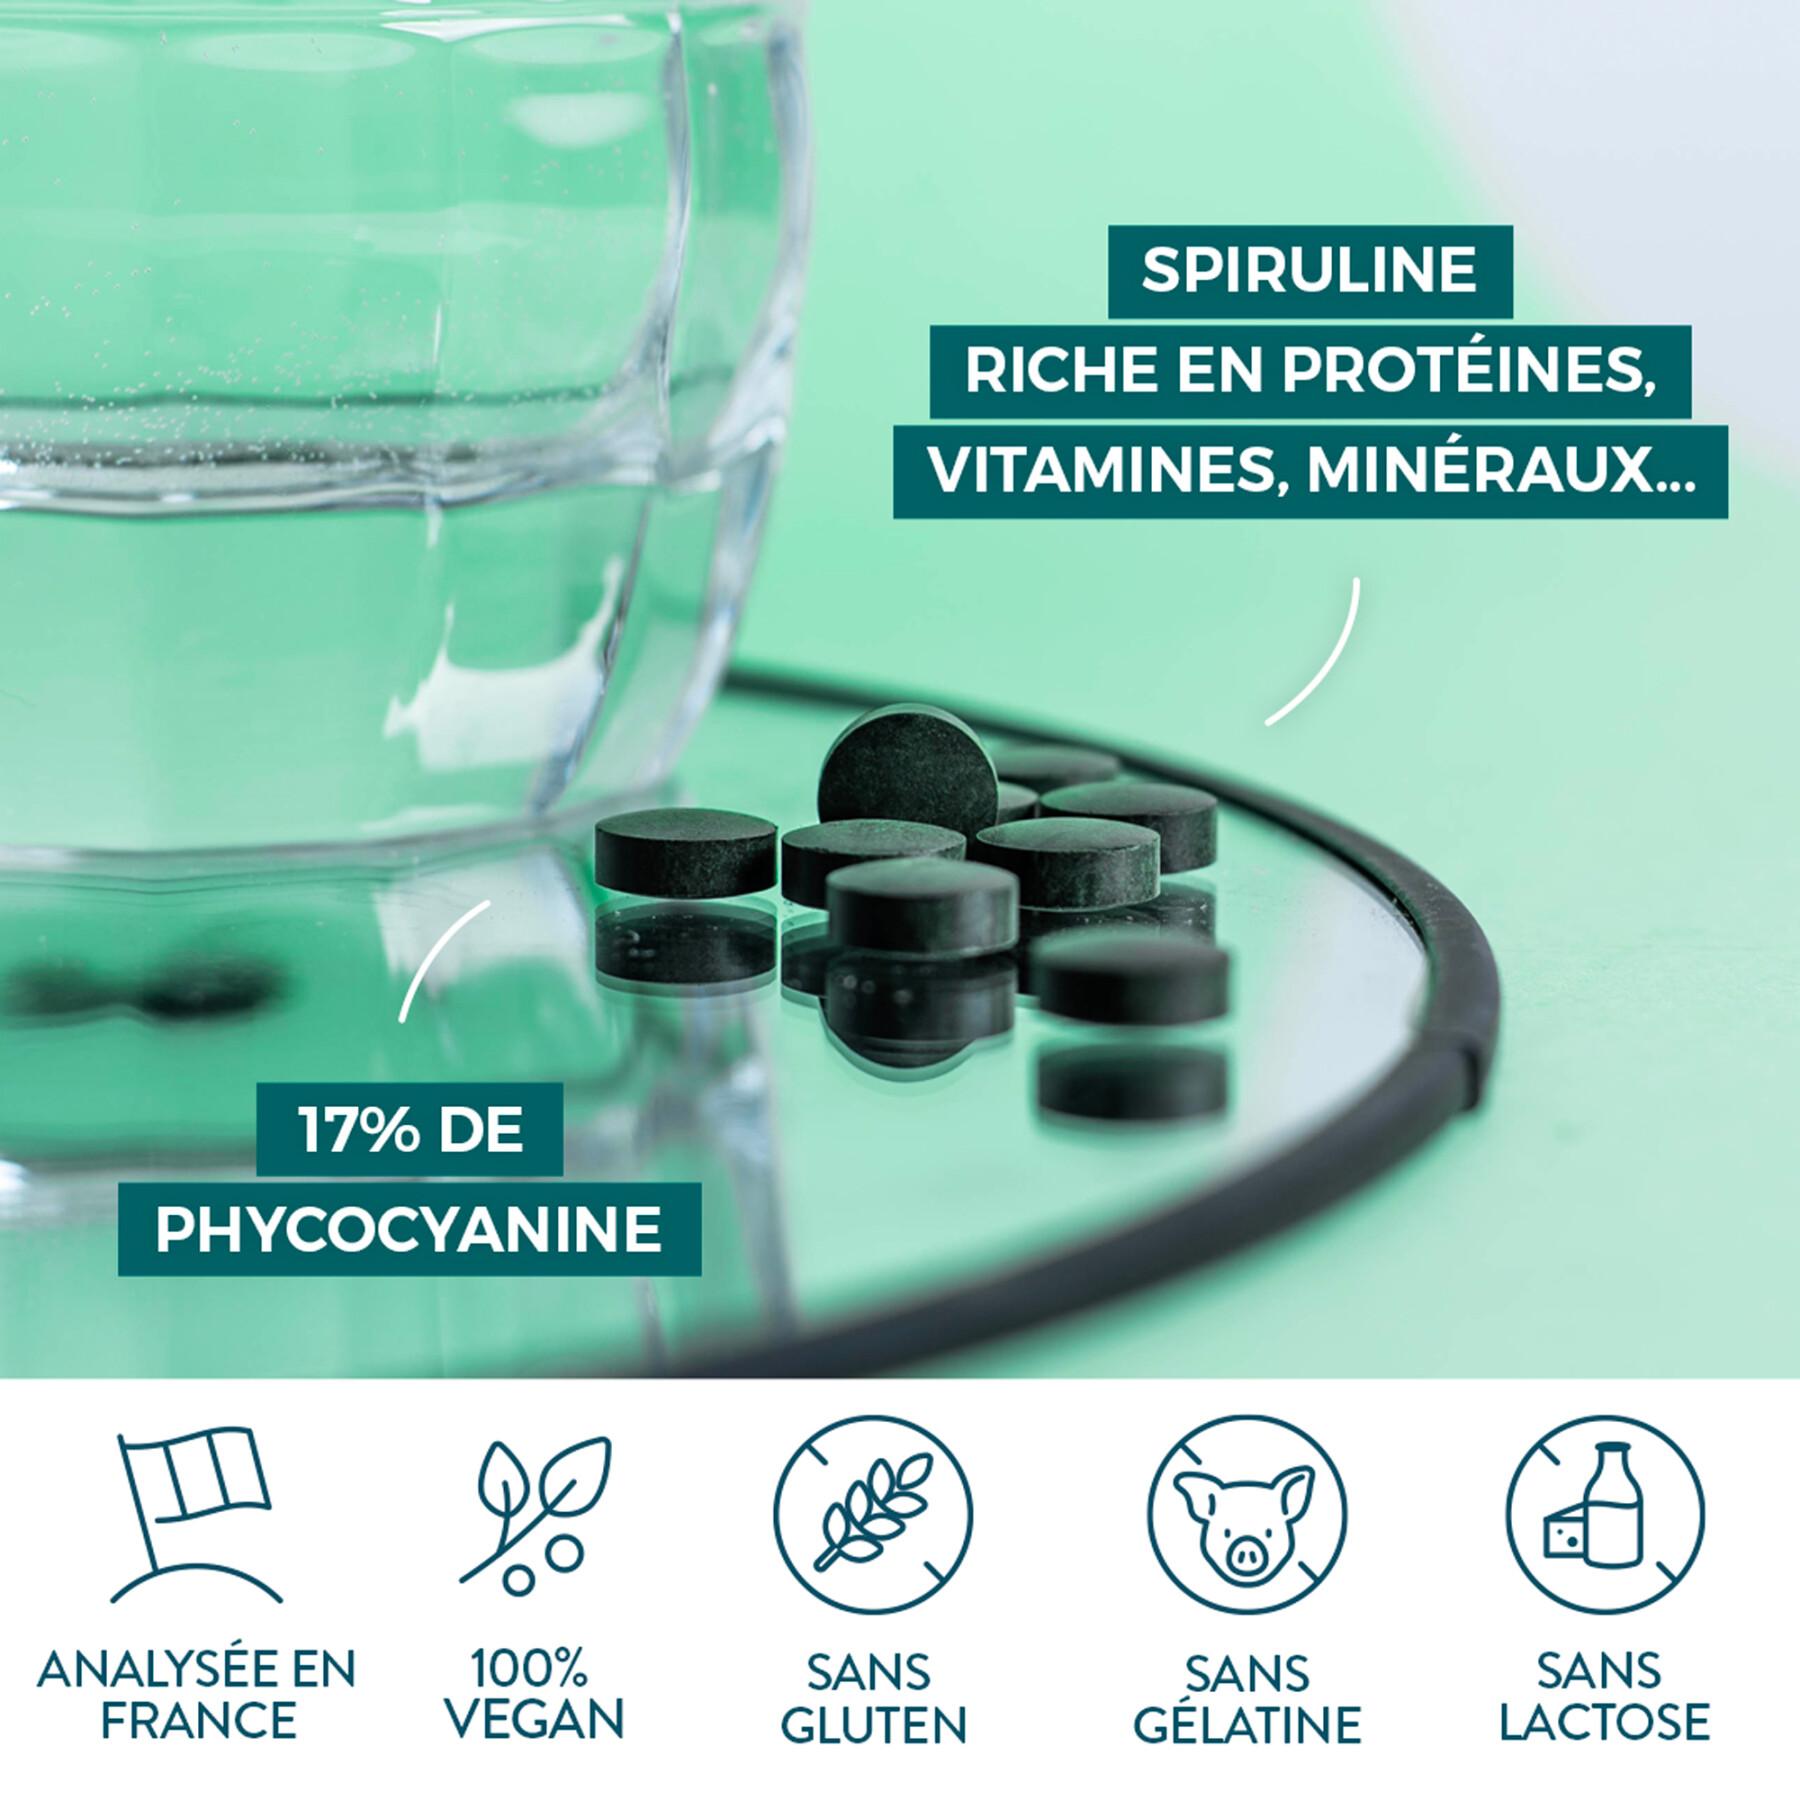 500 tablets of spirulina 100% organic Nutri&Co